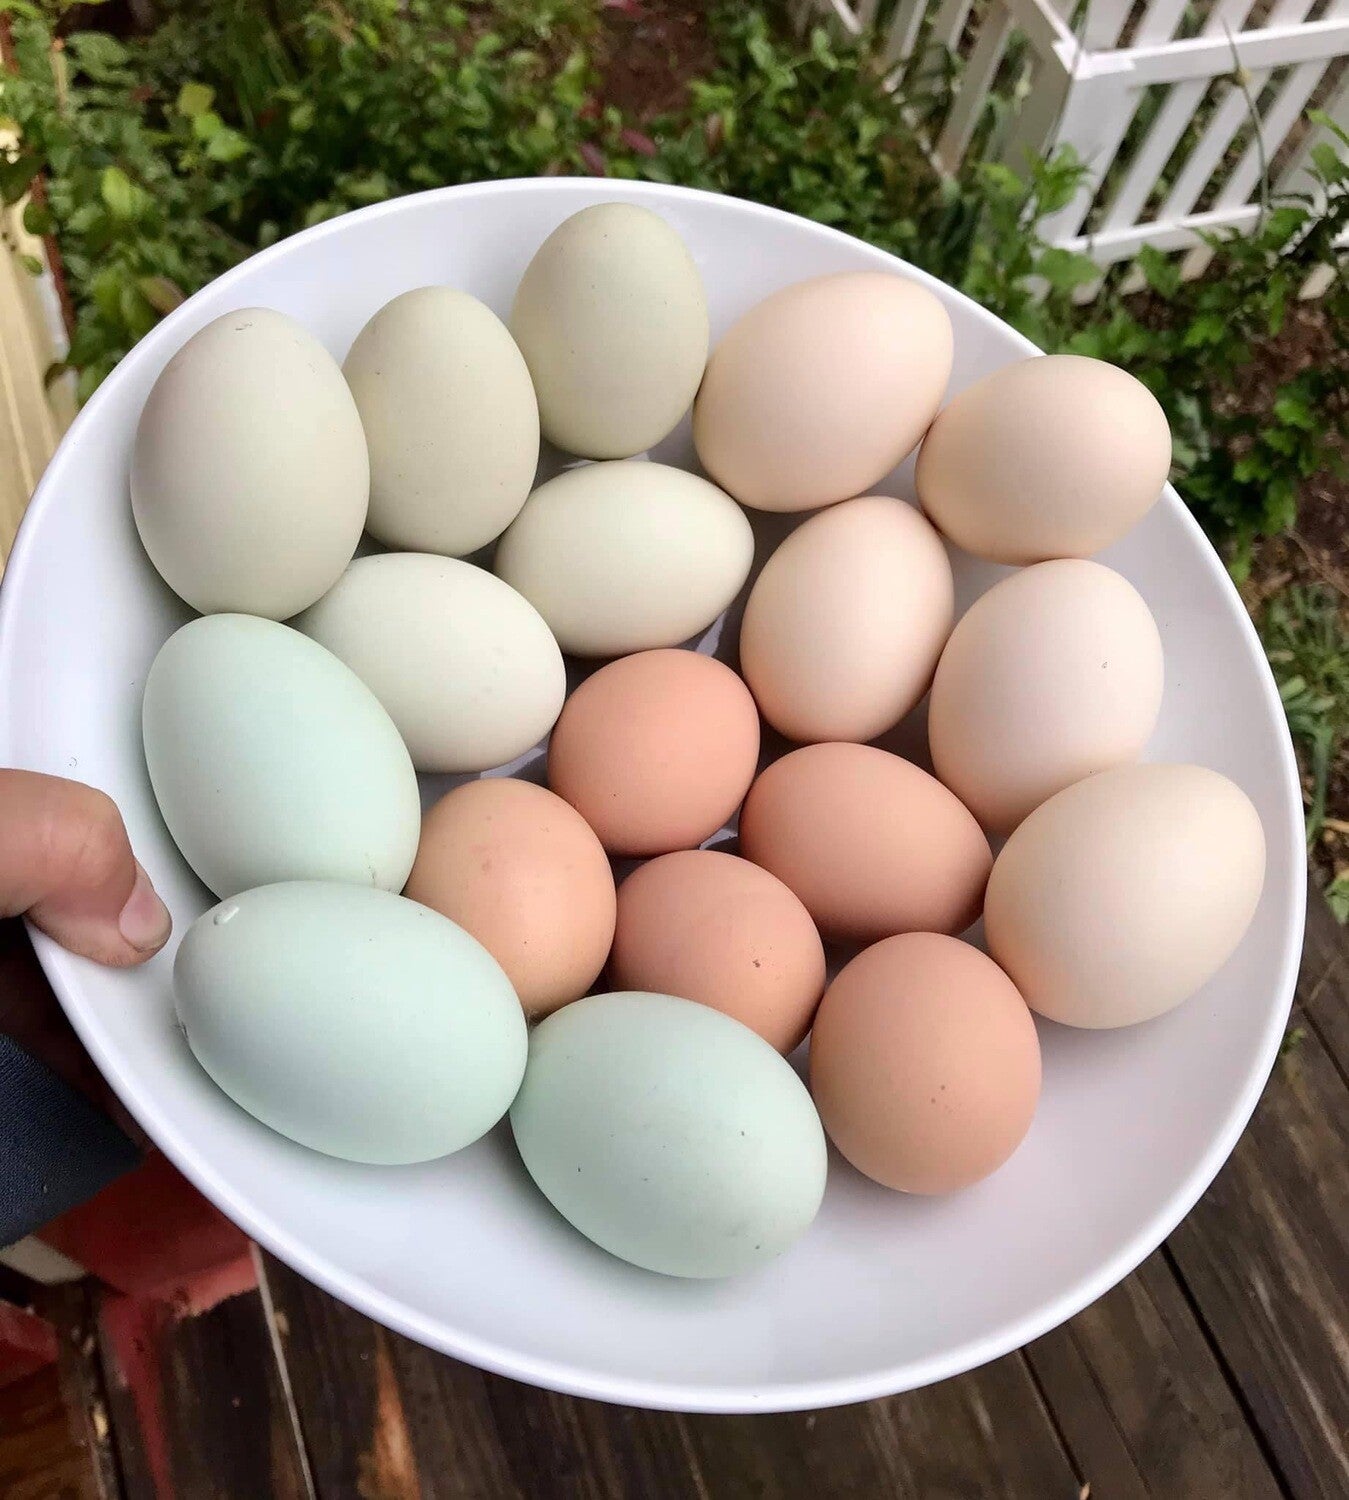 Farm Fresh Free Range Eggs